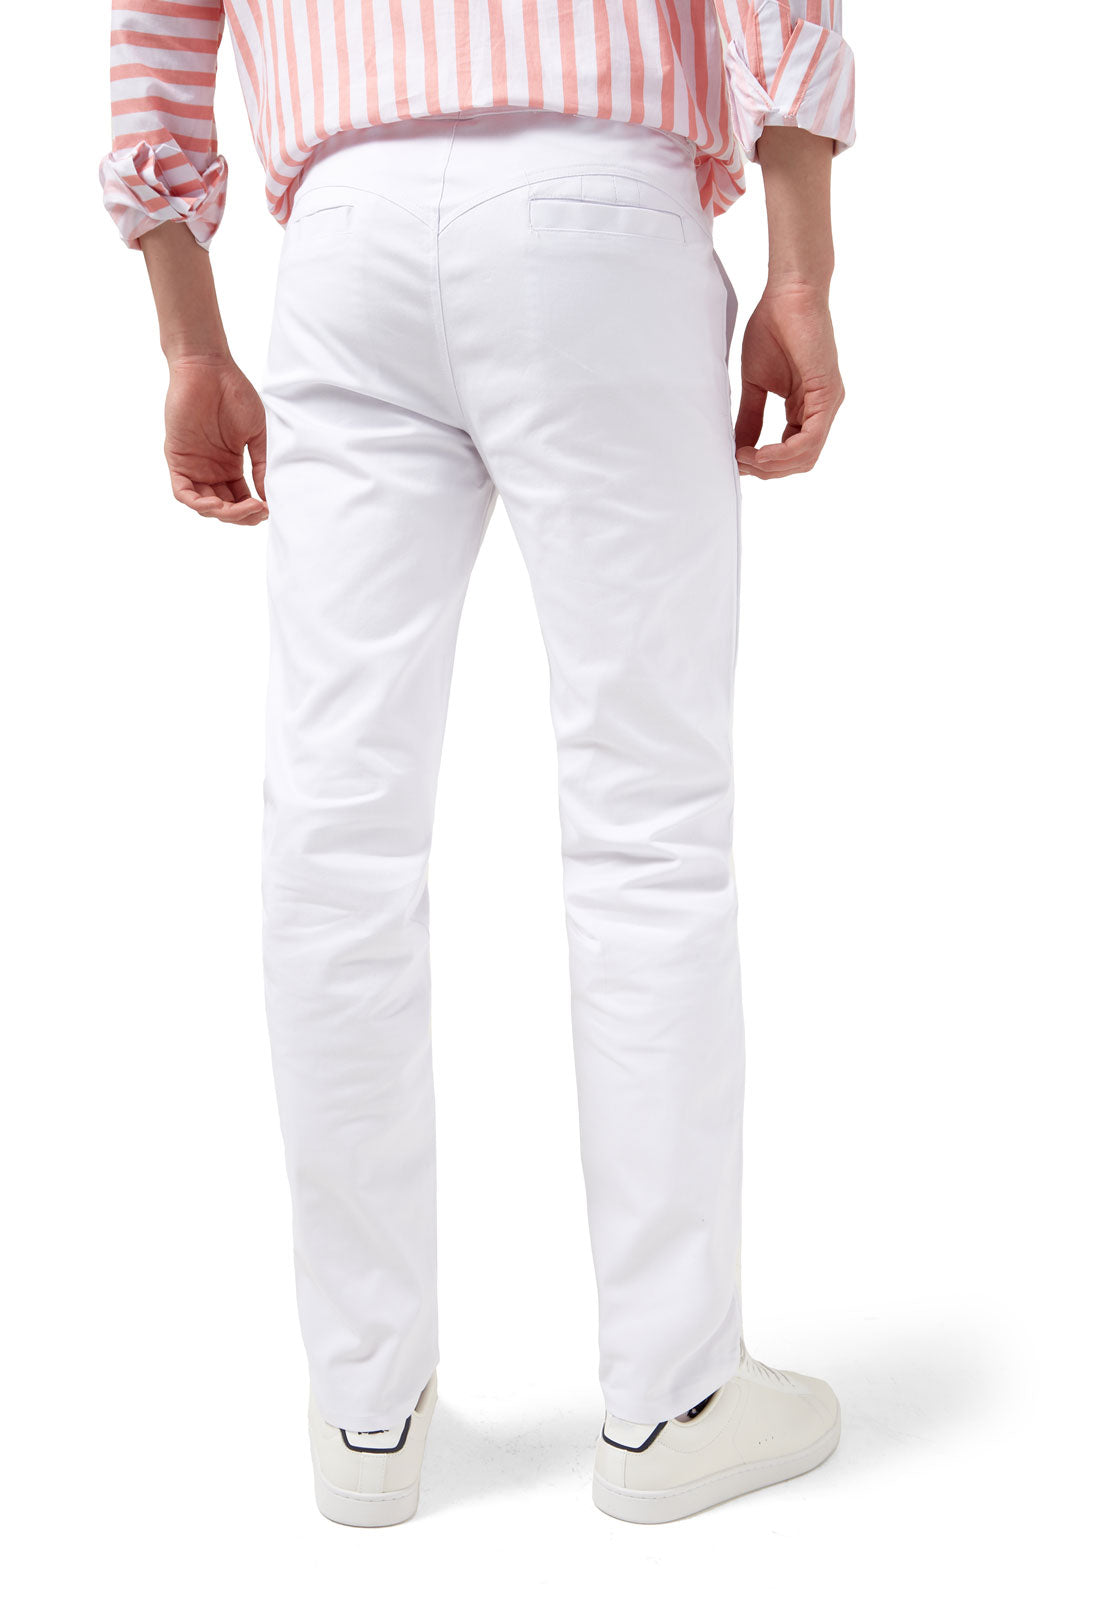 Pantalon Blanco Para Hombre